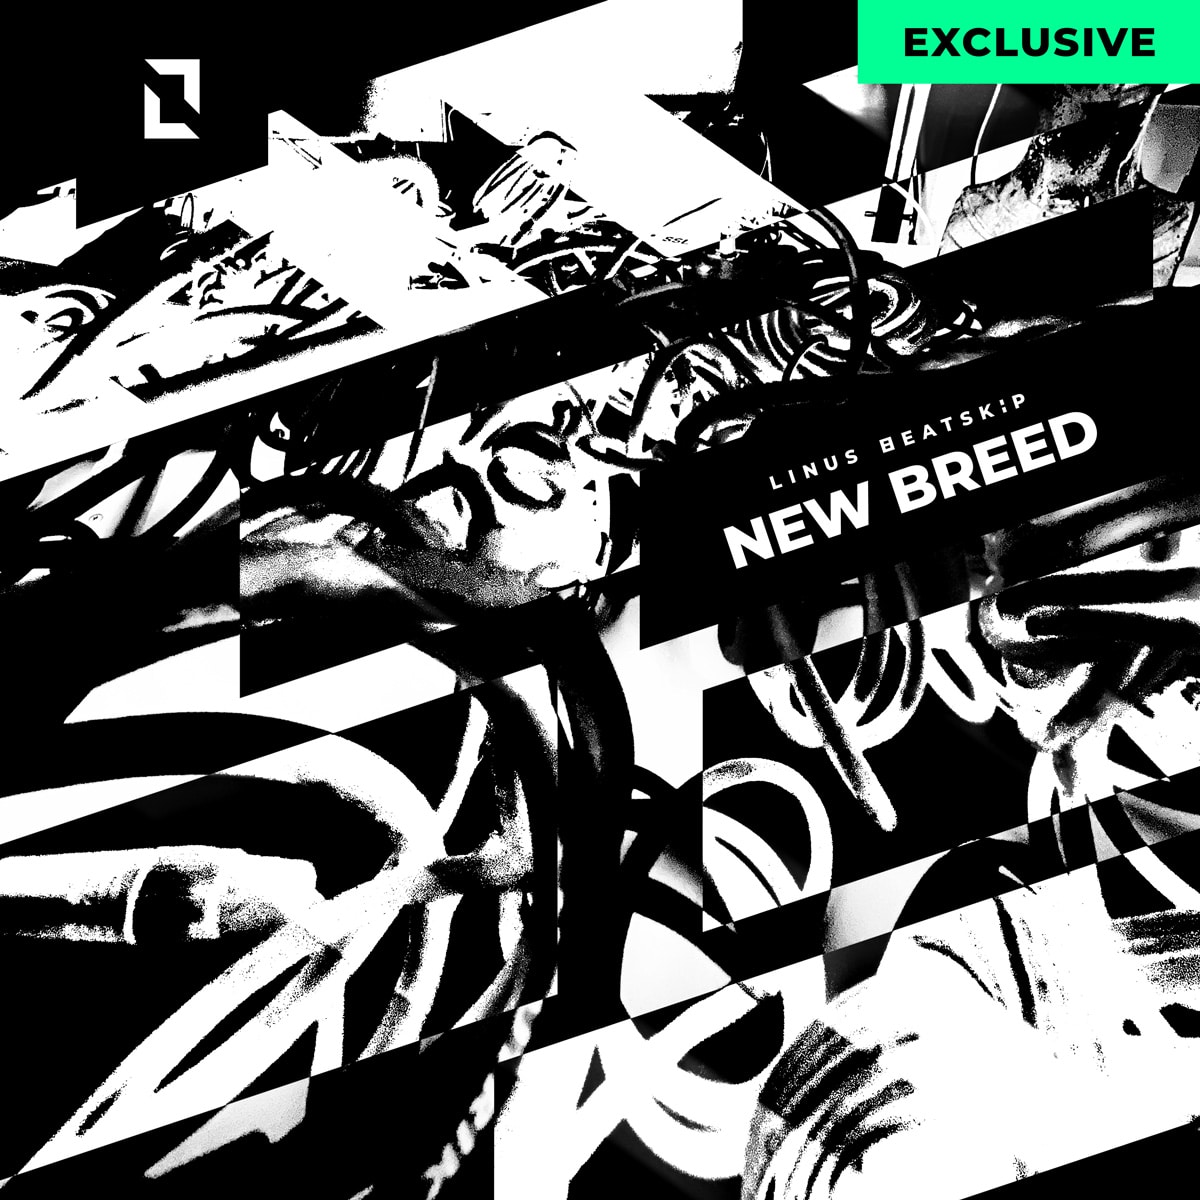 Single: NEW BREED Artist: LINUS BEATSKiP